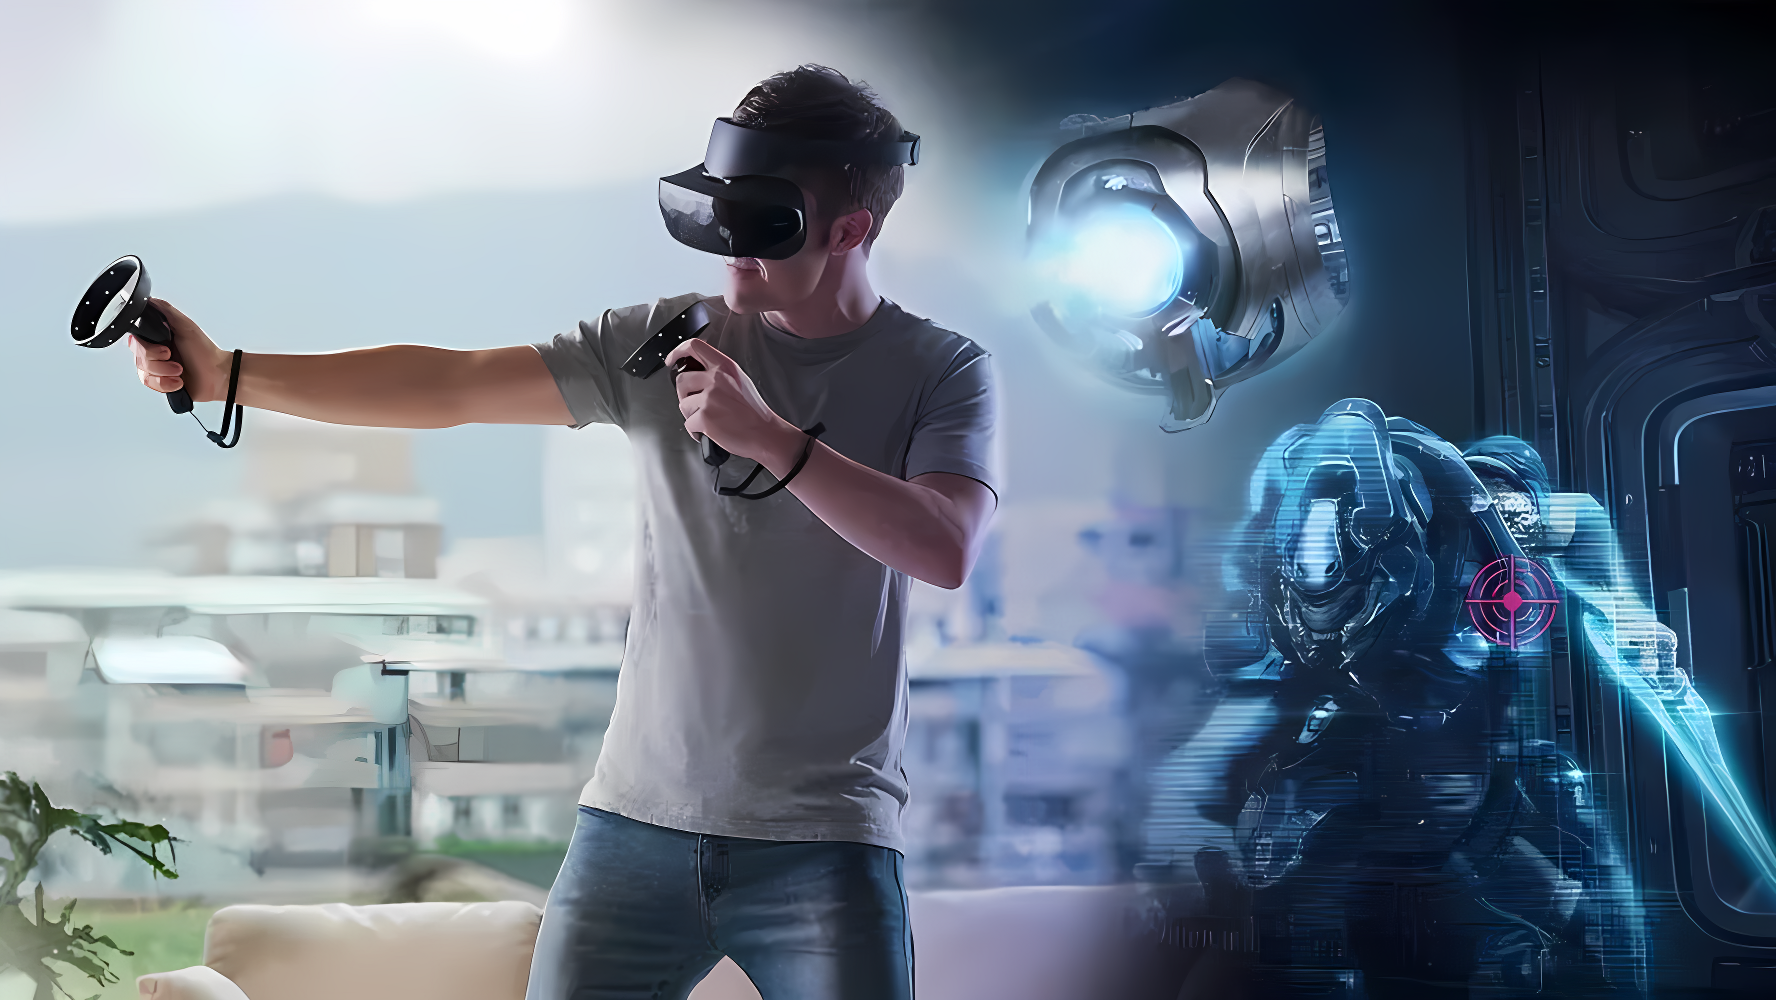 一位男子戴着虚拟现实头盔，手持控制器，似乎正在家中体验沉浸式的VR游戏，背景有科幻元素。